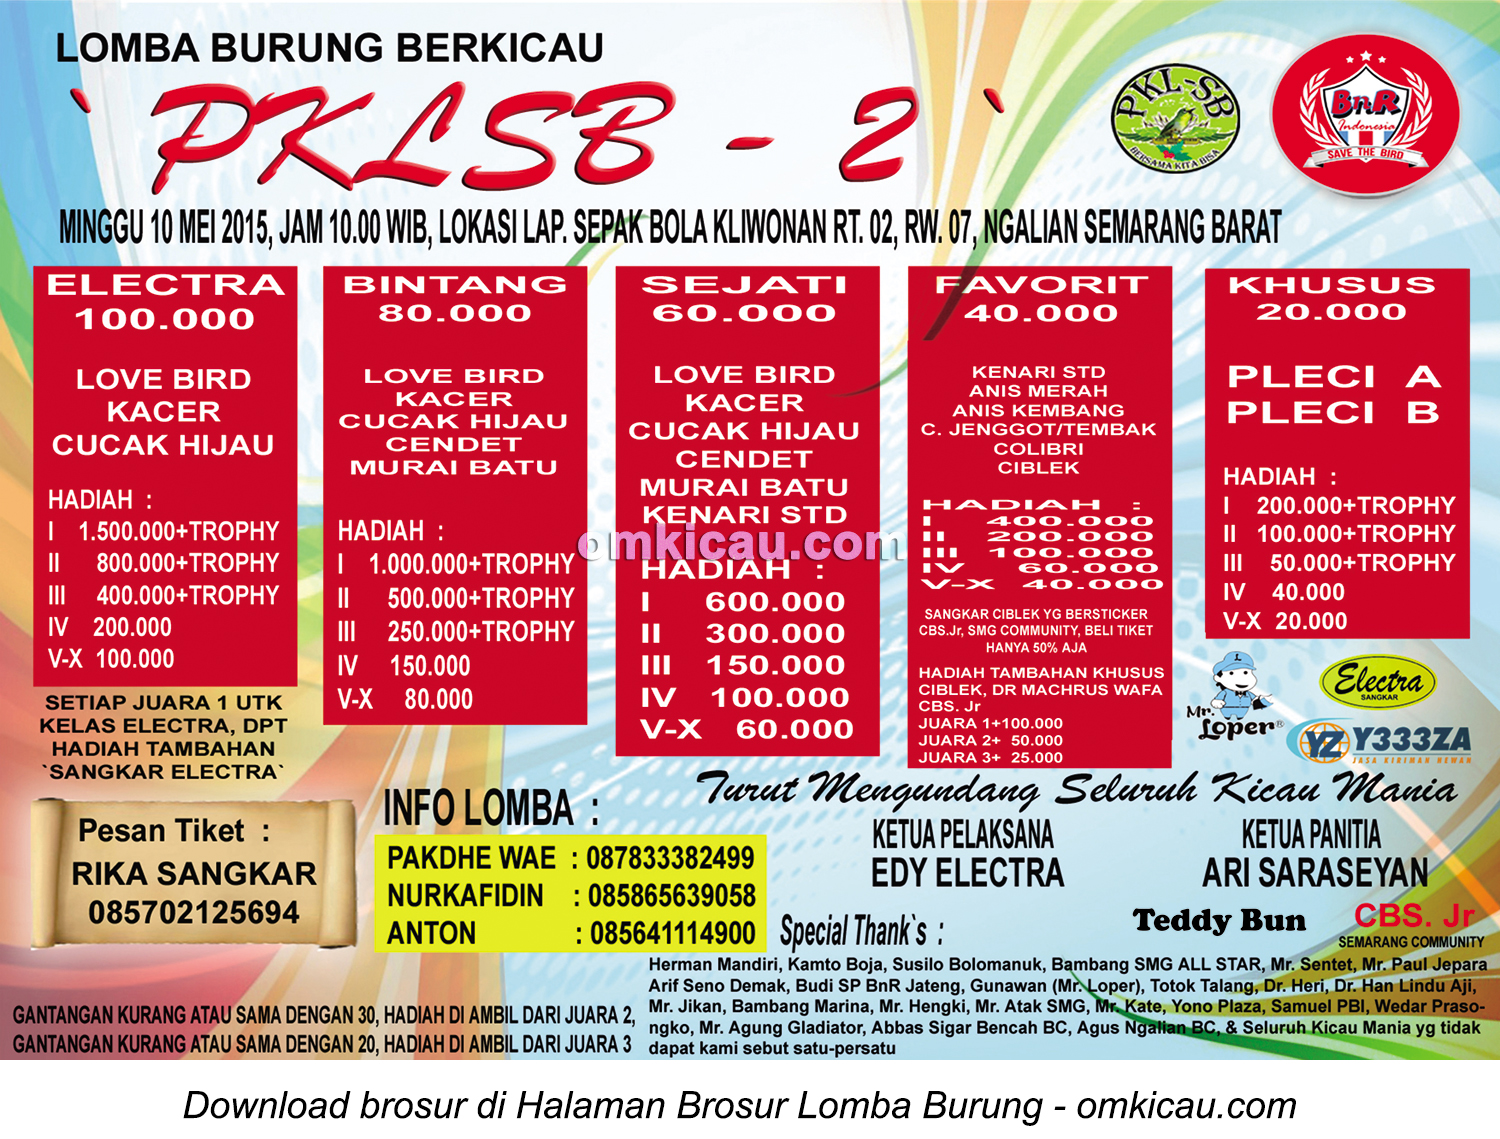 Brosur Lomba Burung Berkicau PKLSB-2, Semarang, 10 Mei 2015